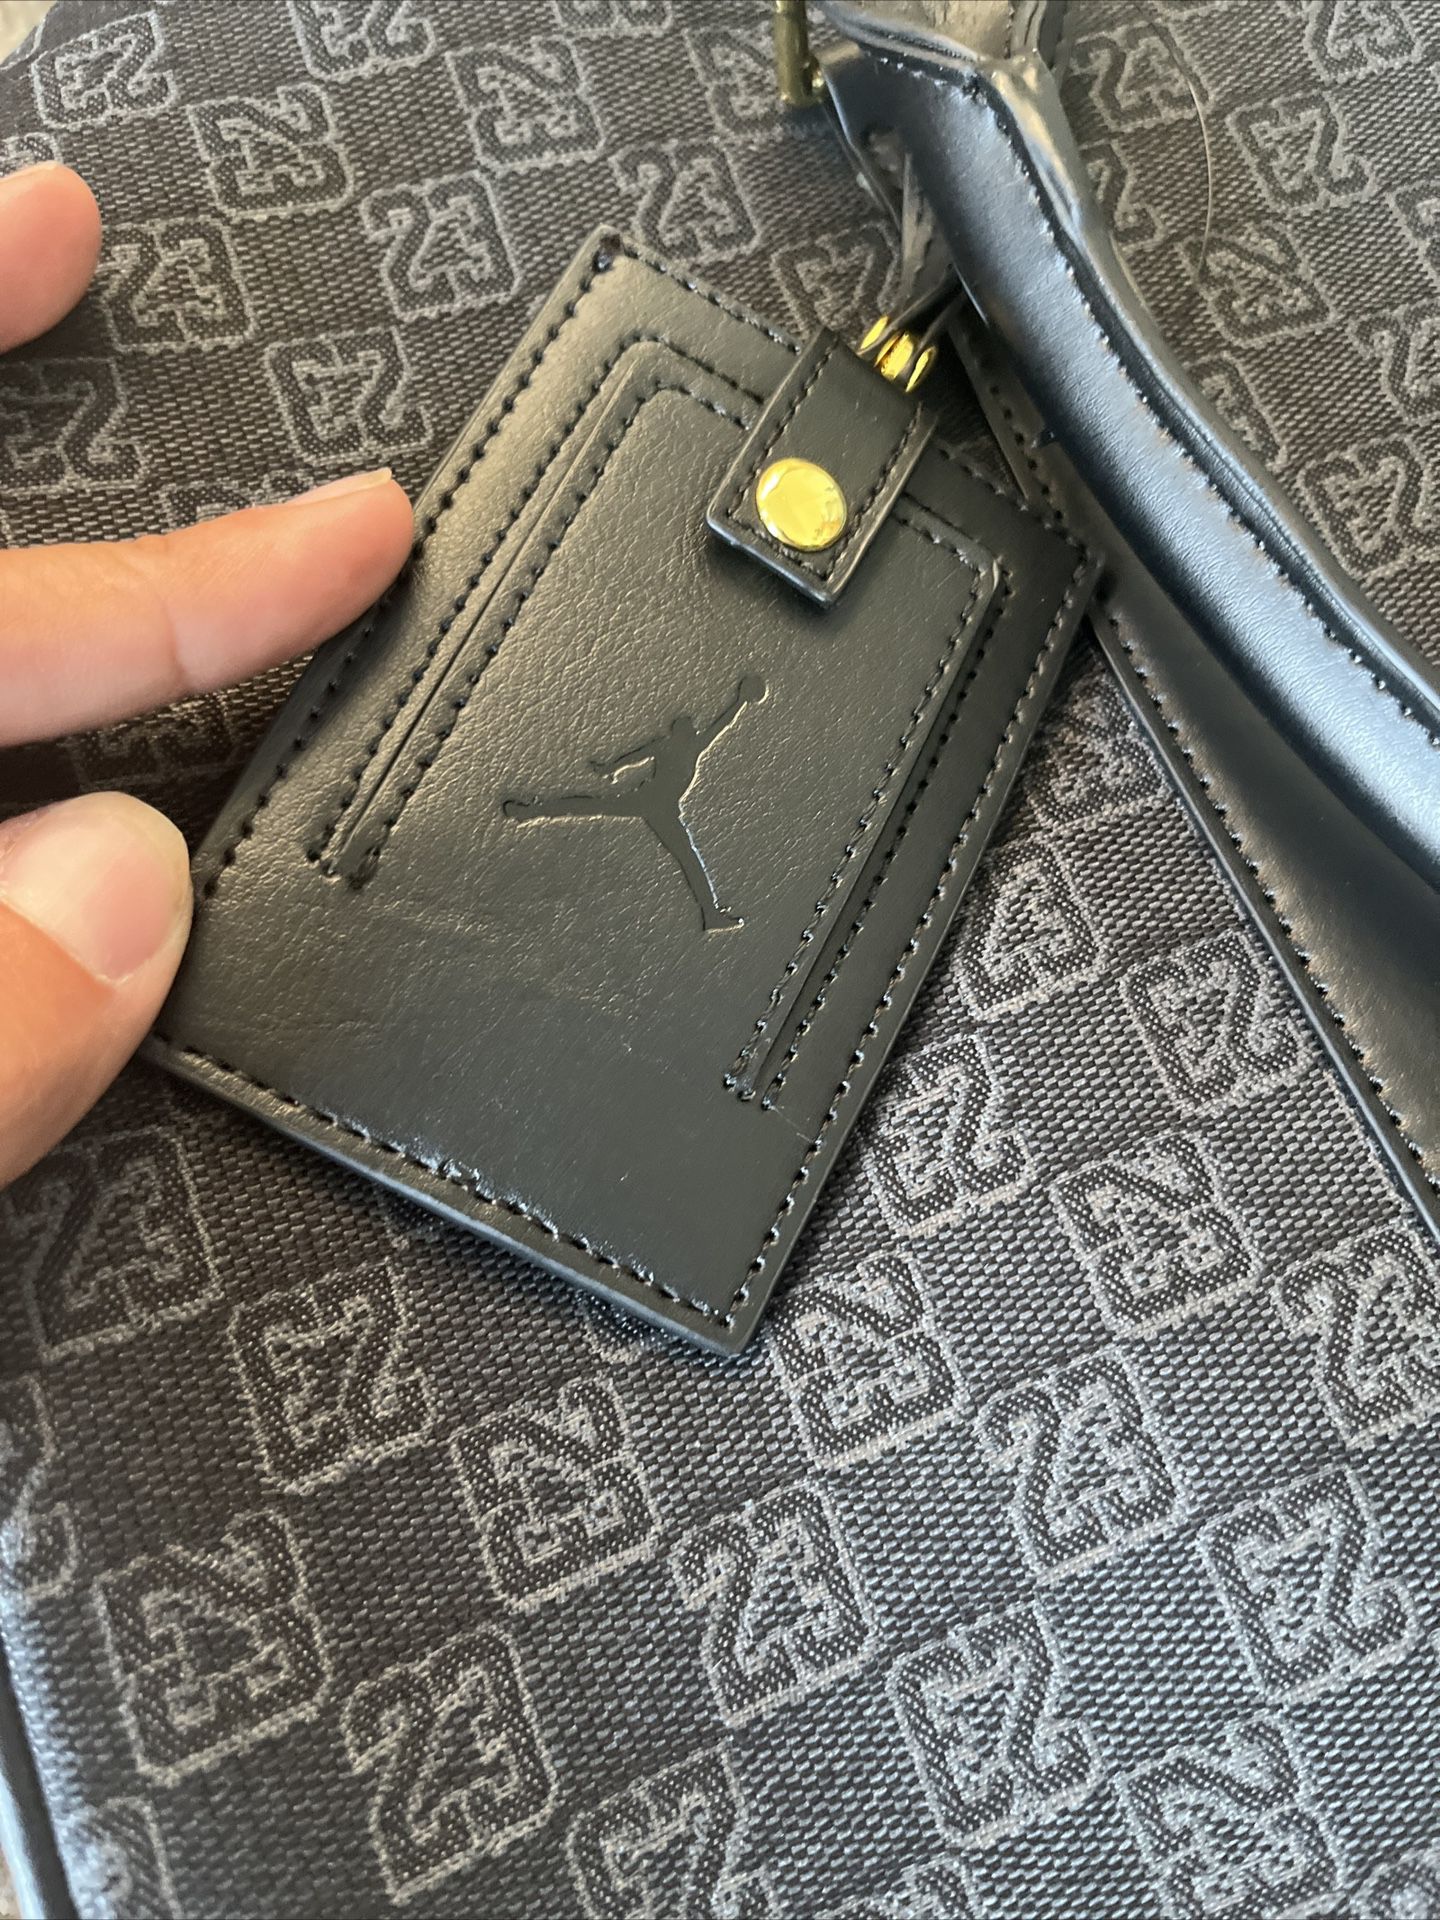 Jordan Monogram Duffle Bag Black – Gotgoods